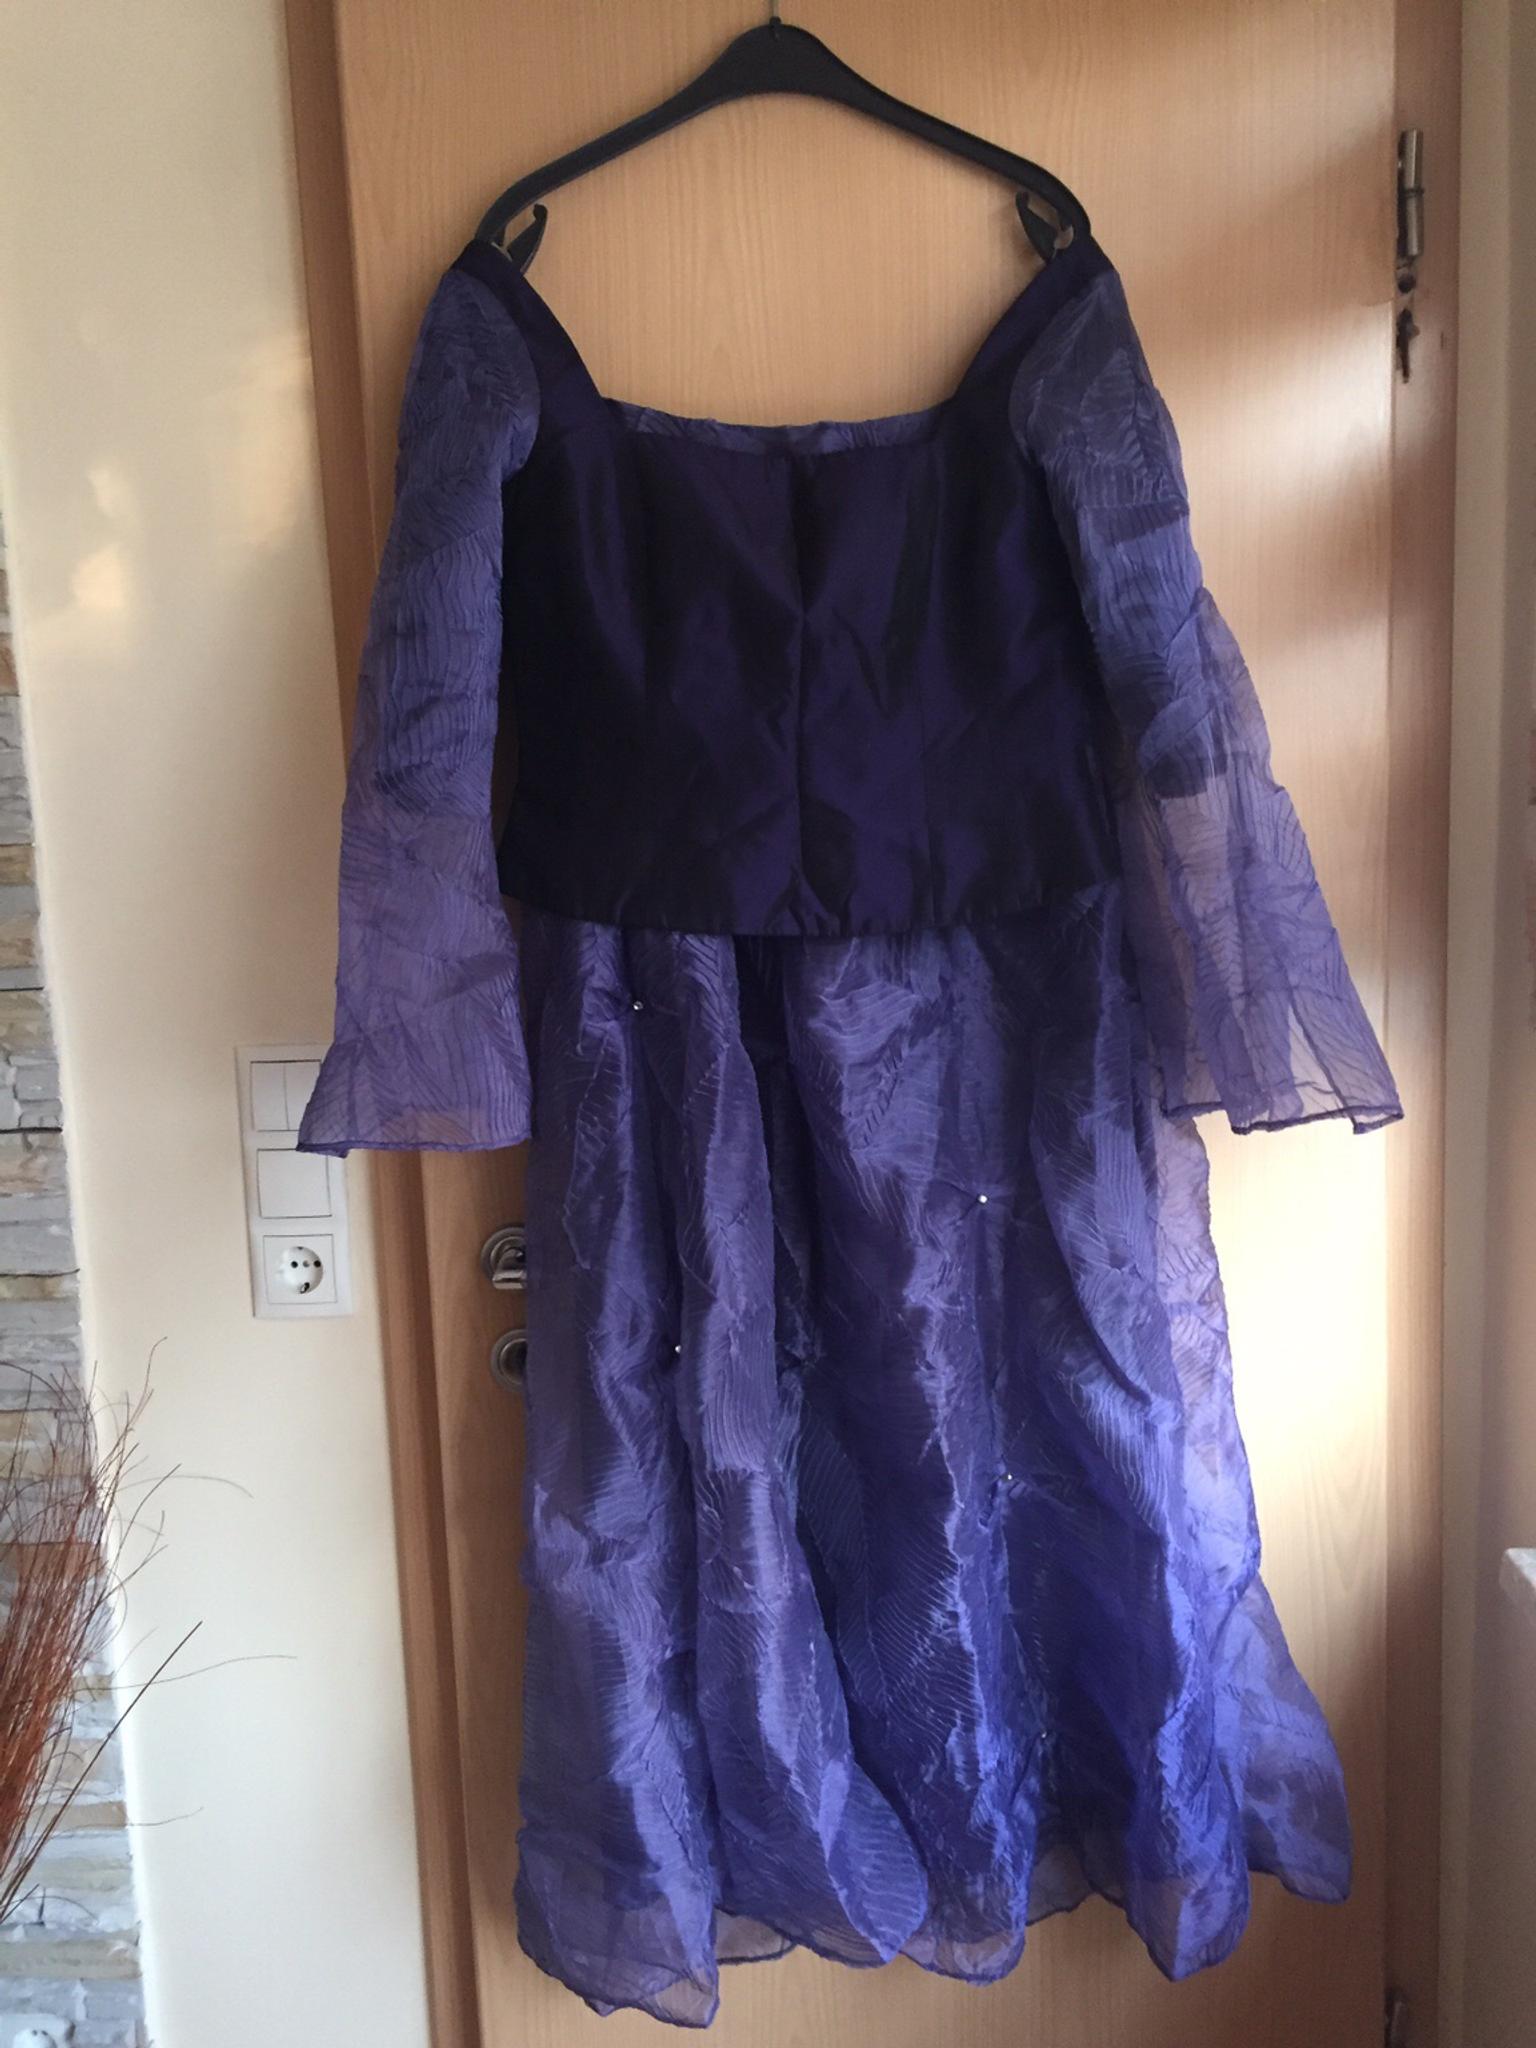 Festliches Kleid Zweiteilig Mit Schal In 67071 Ludwigshafen Am Rhein Fur 5 00 Zum Verkauf Shpock De